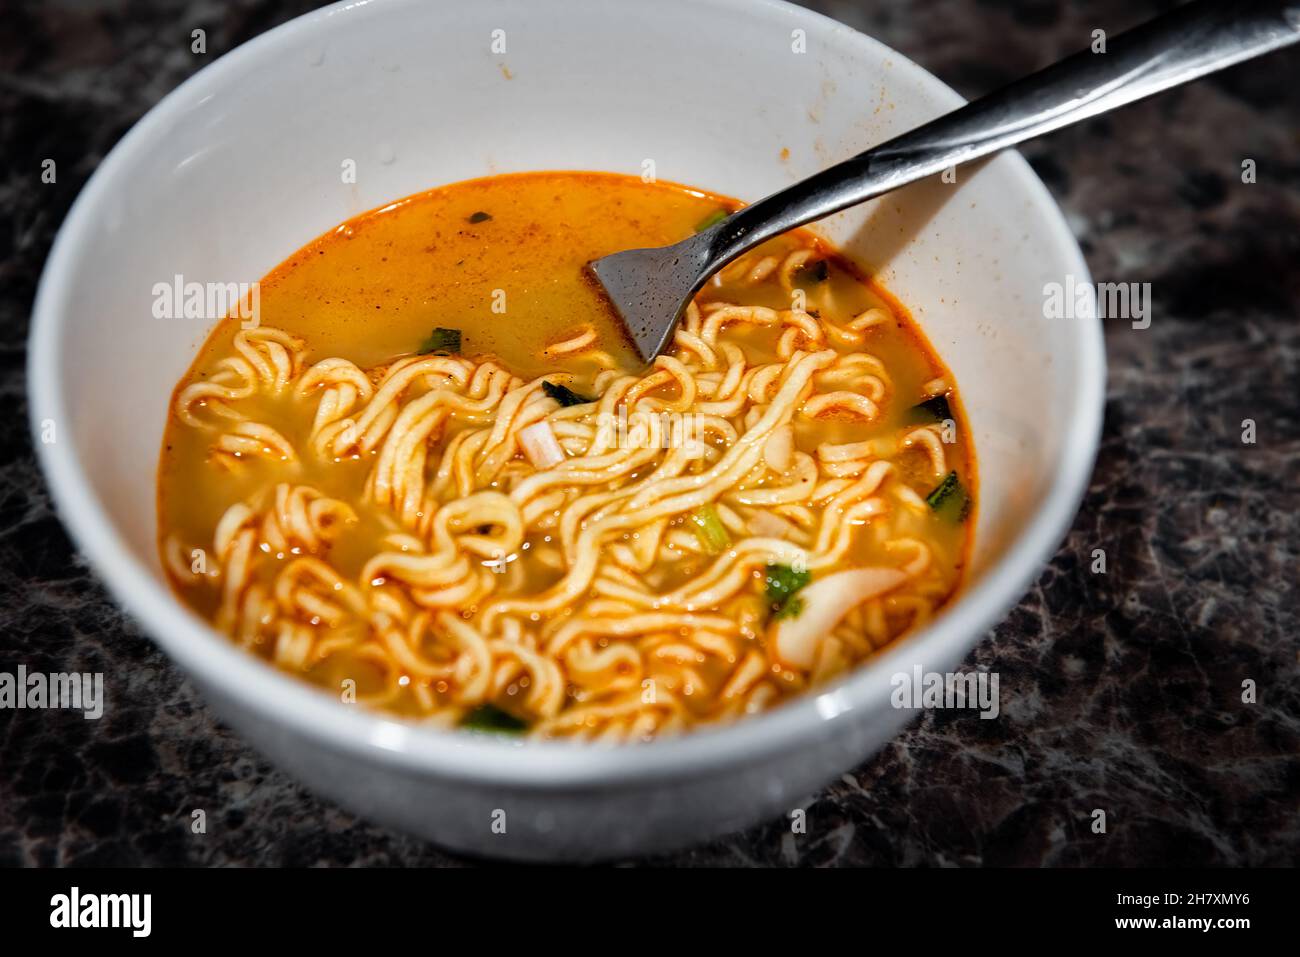 Primo piano di una spaghetti di ramen rosso piccante zuppa istantanea in ciotola con forchetta come pasto asiatico giapponese con consistenza di pasta e cipolle verdi Foto Stock